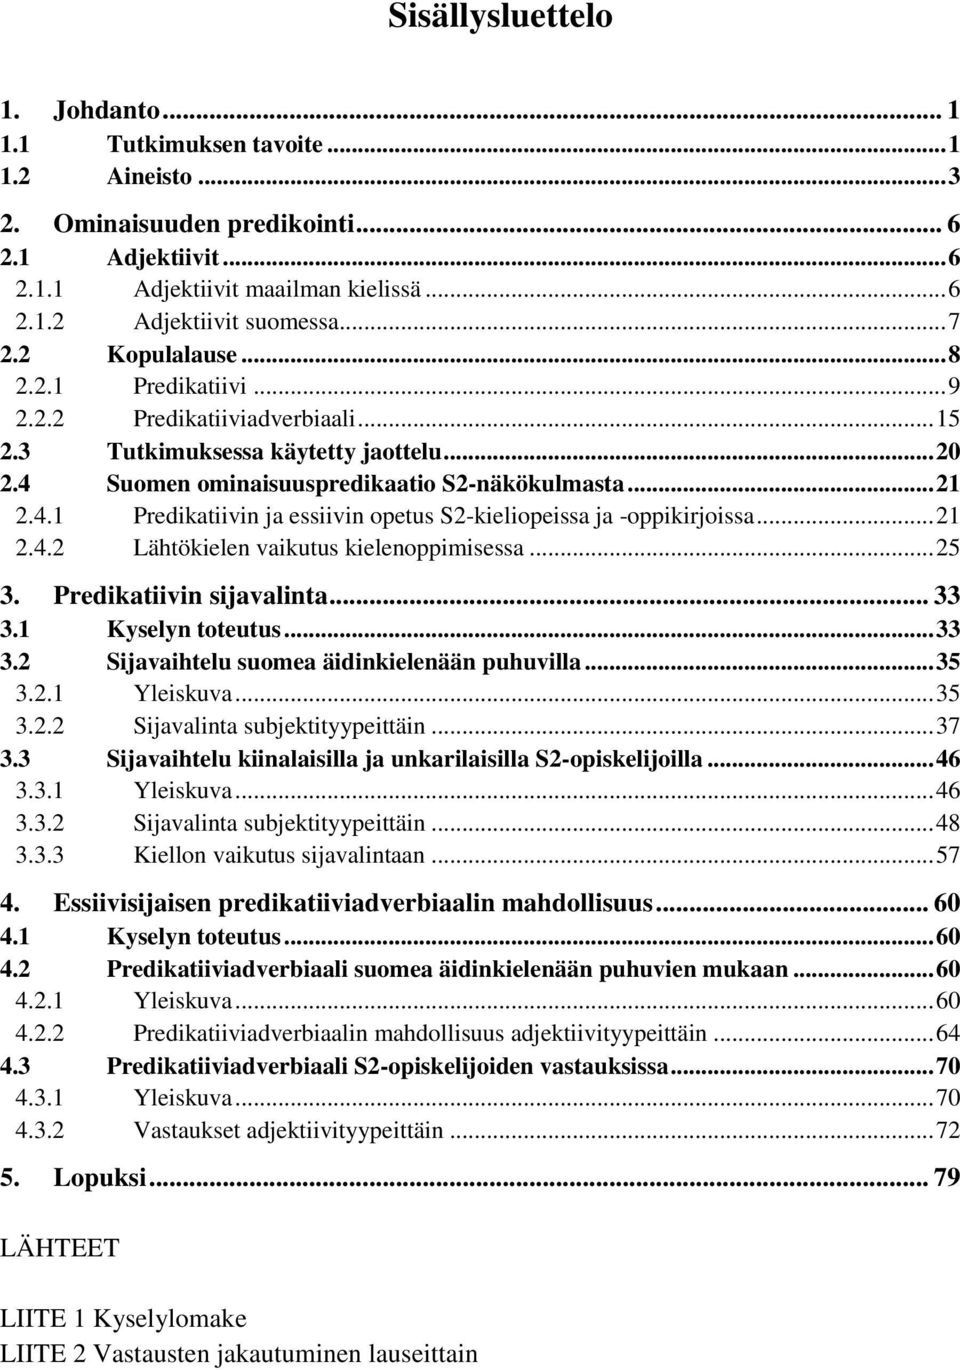 Suomen ominaisuuspredikaatio S2-näkökulmasta... 21 2.4.1 Predikatiivin ja essiivin opetus S2-kieliopeissa ja -oppikirjoissa... 21 2.4.2 Lähtökielen vaikutus kielenoppimisessa... 25 3.